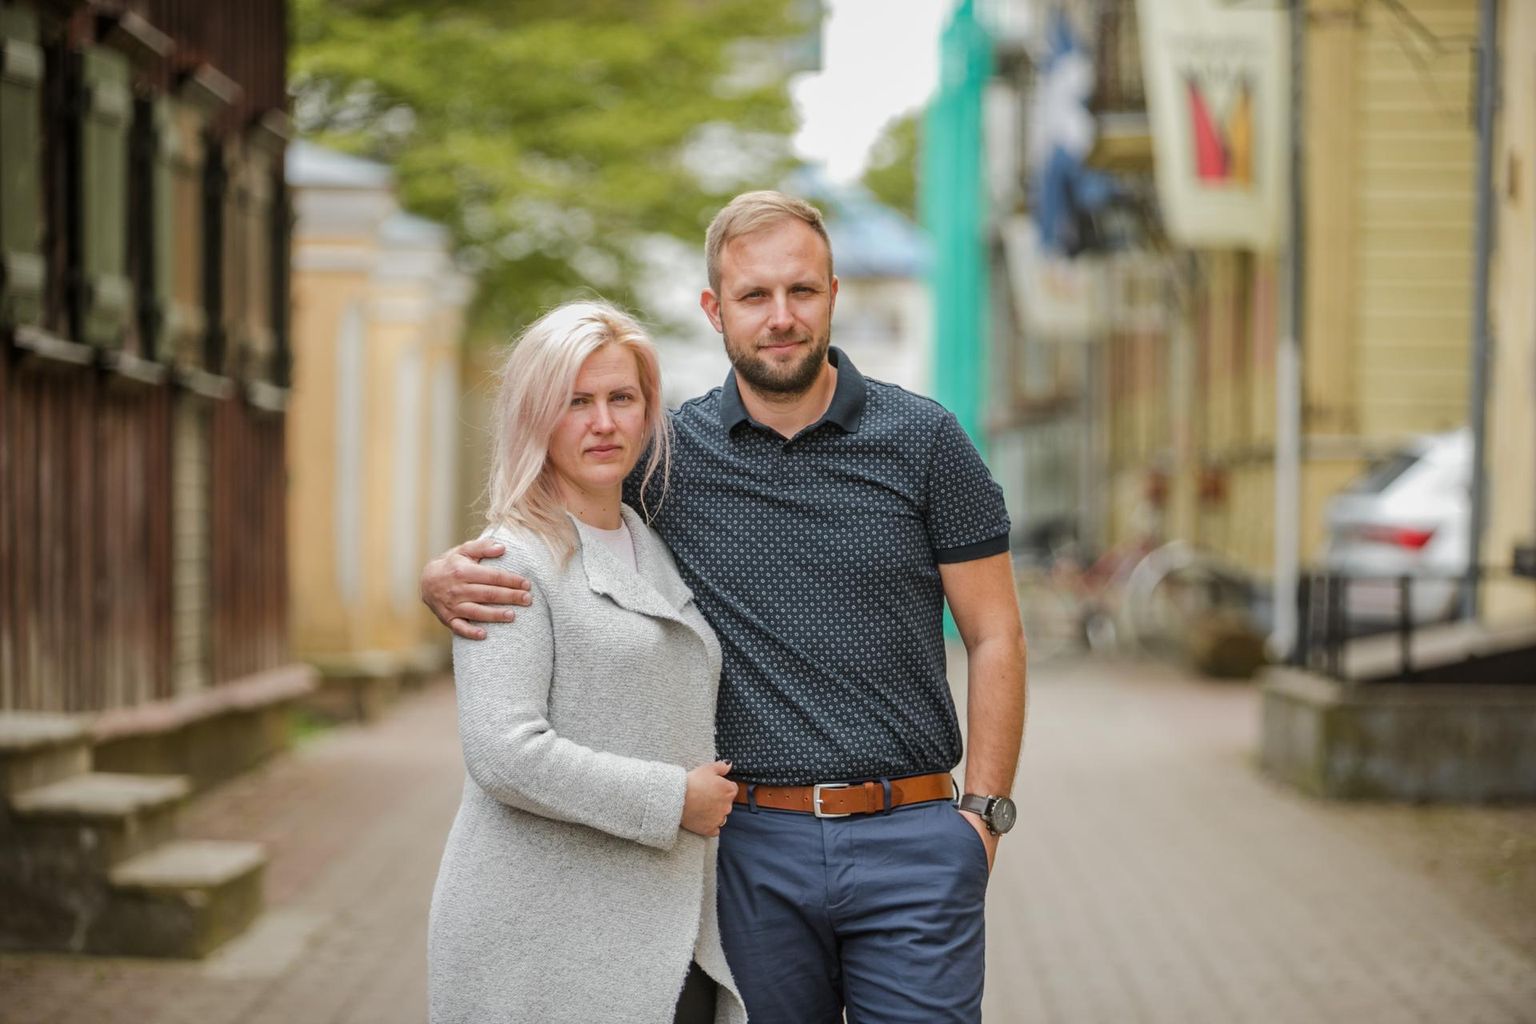 Siret ja Rando Kesküla lubasid vahetult pärast maakohtu otsust, et kui Tarraste eluaegset vangistust ei saa, kolivad nad Eestist ära. Näib, et nad saavad siiski kodumaale jääda.